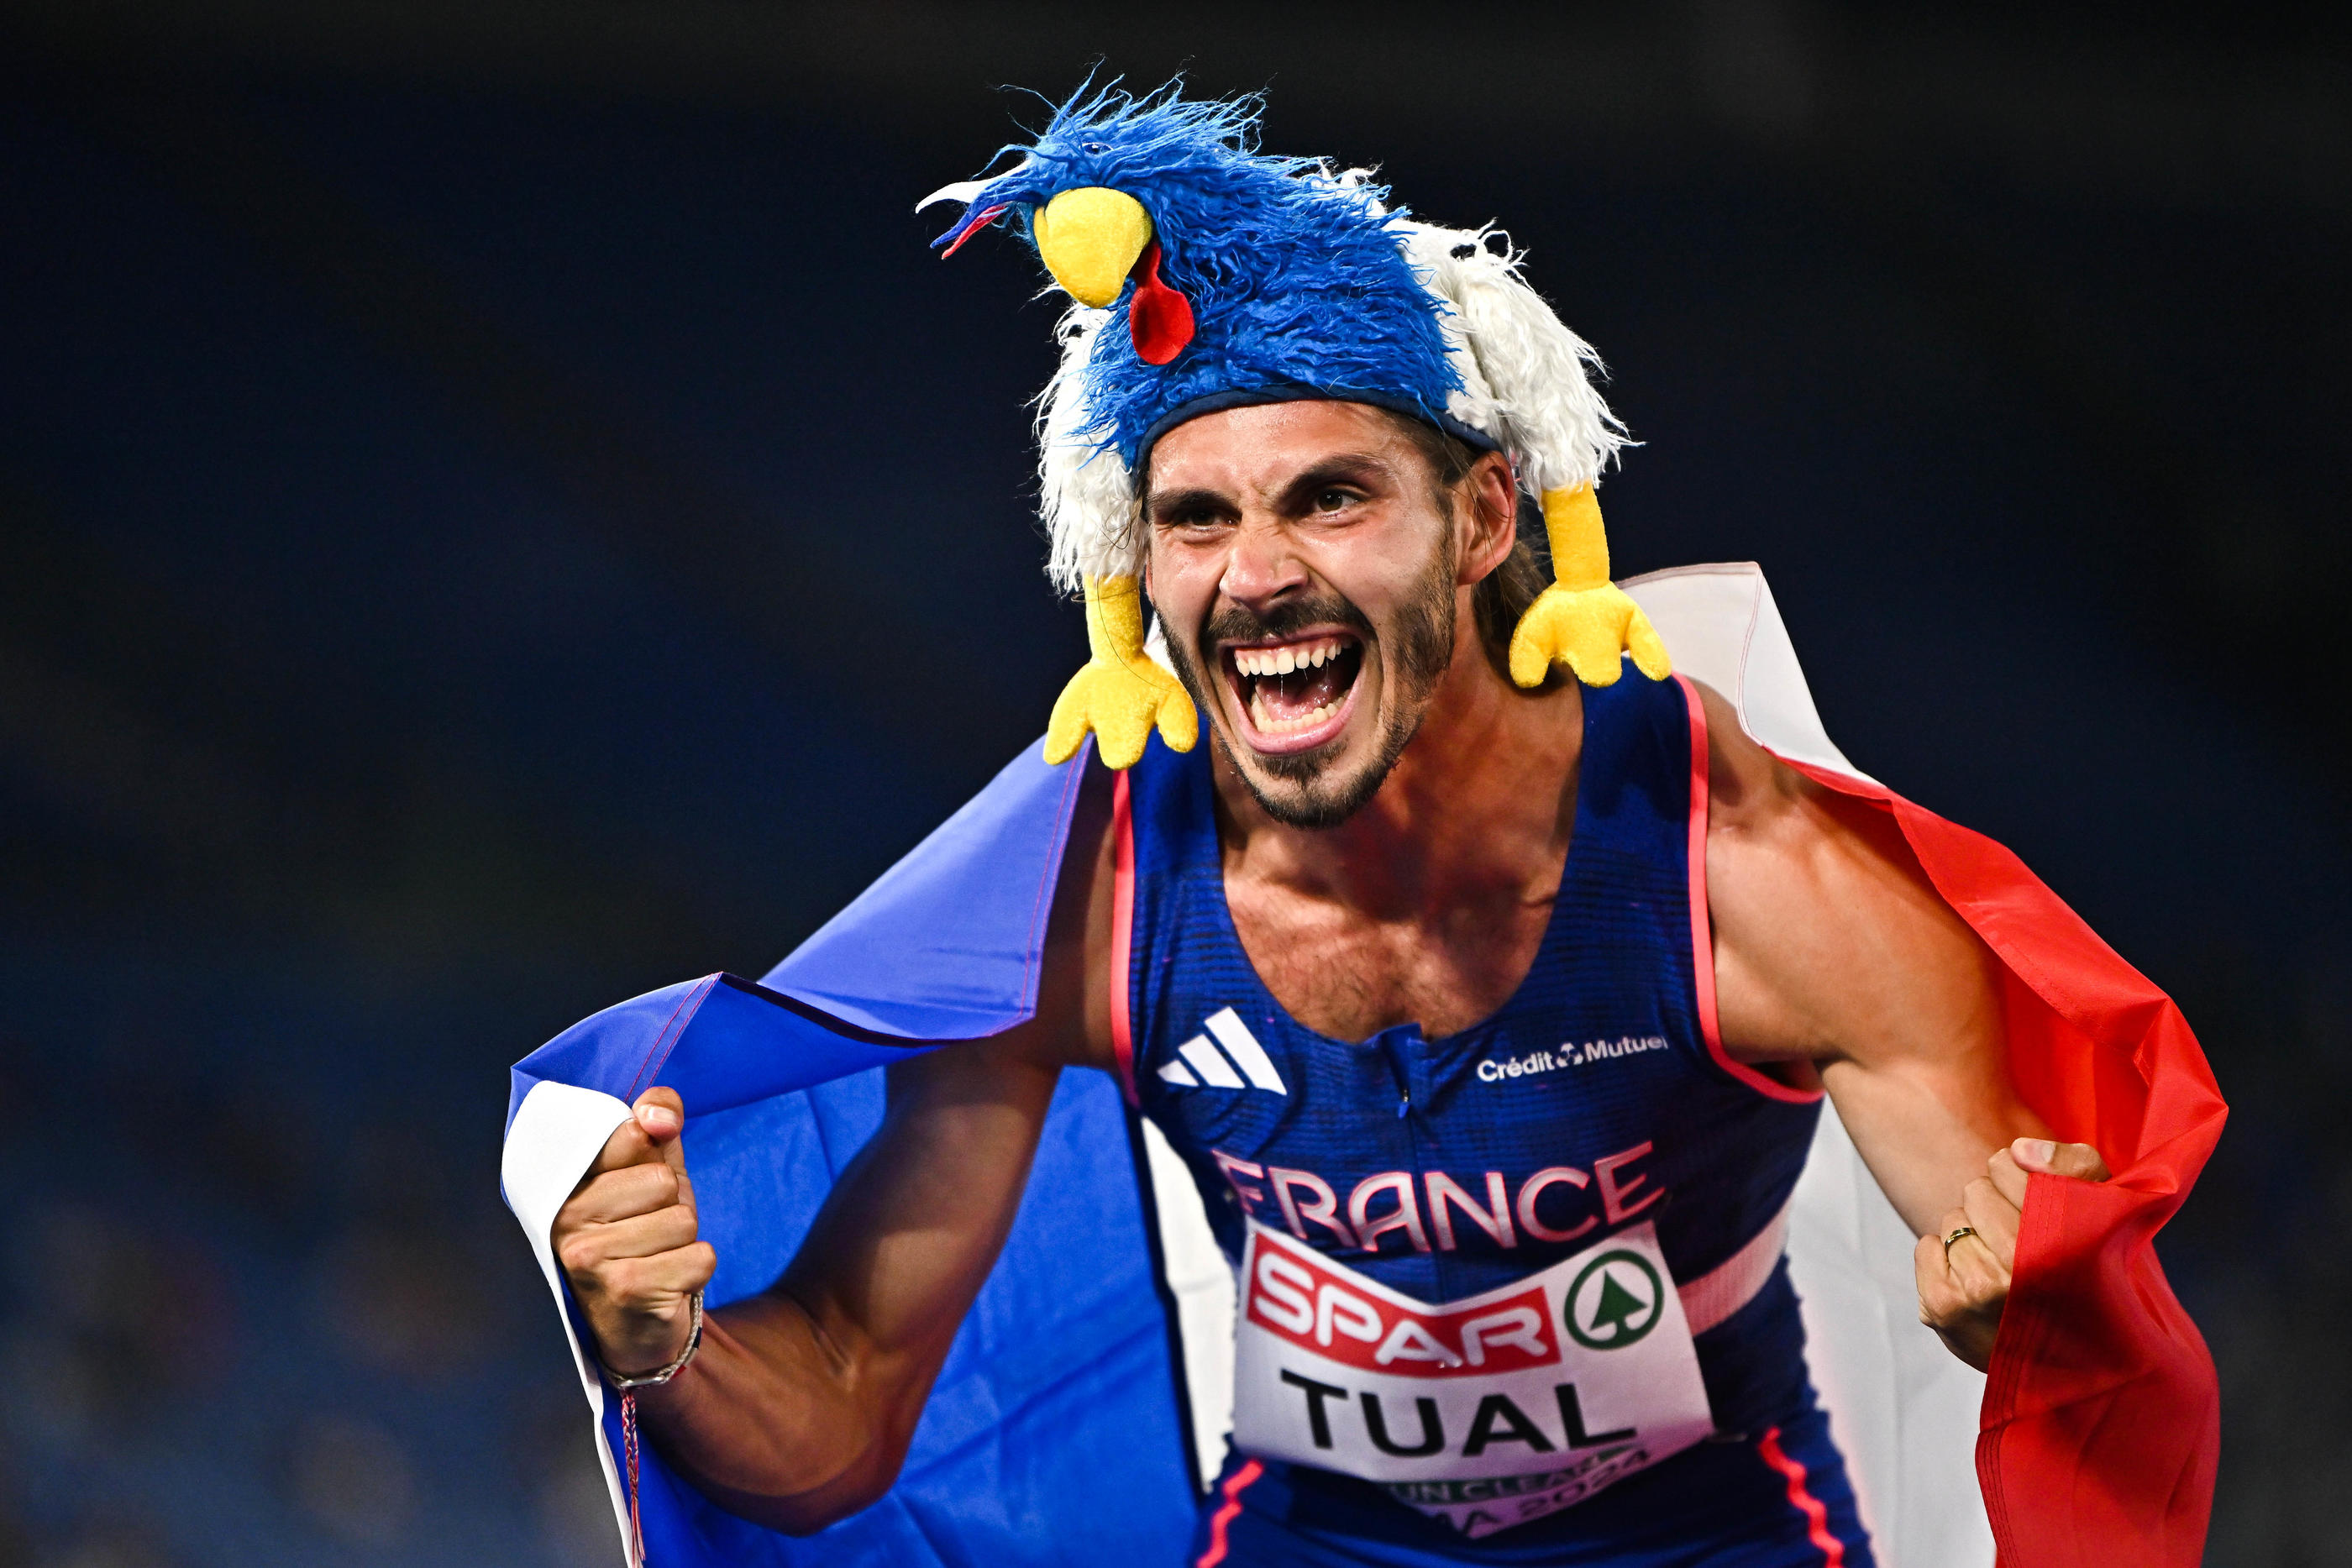 Gabriel Tual célèbre son titre européen sur 800m. Sam Barnes/Sportsfile/Icon Sport